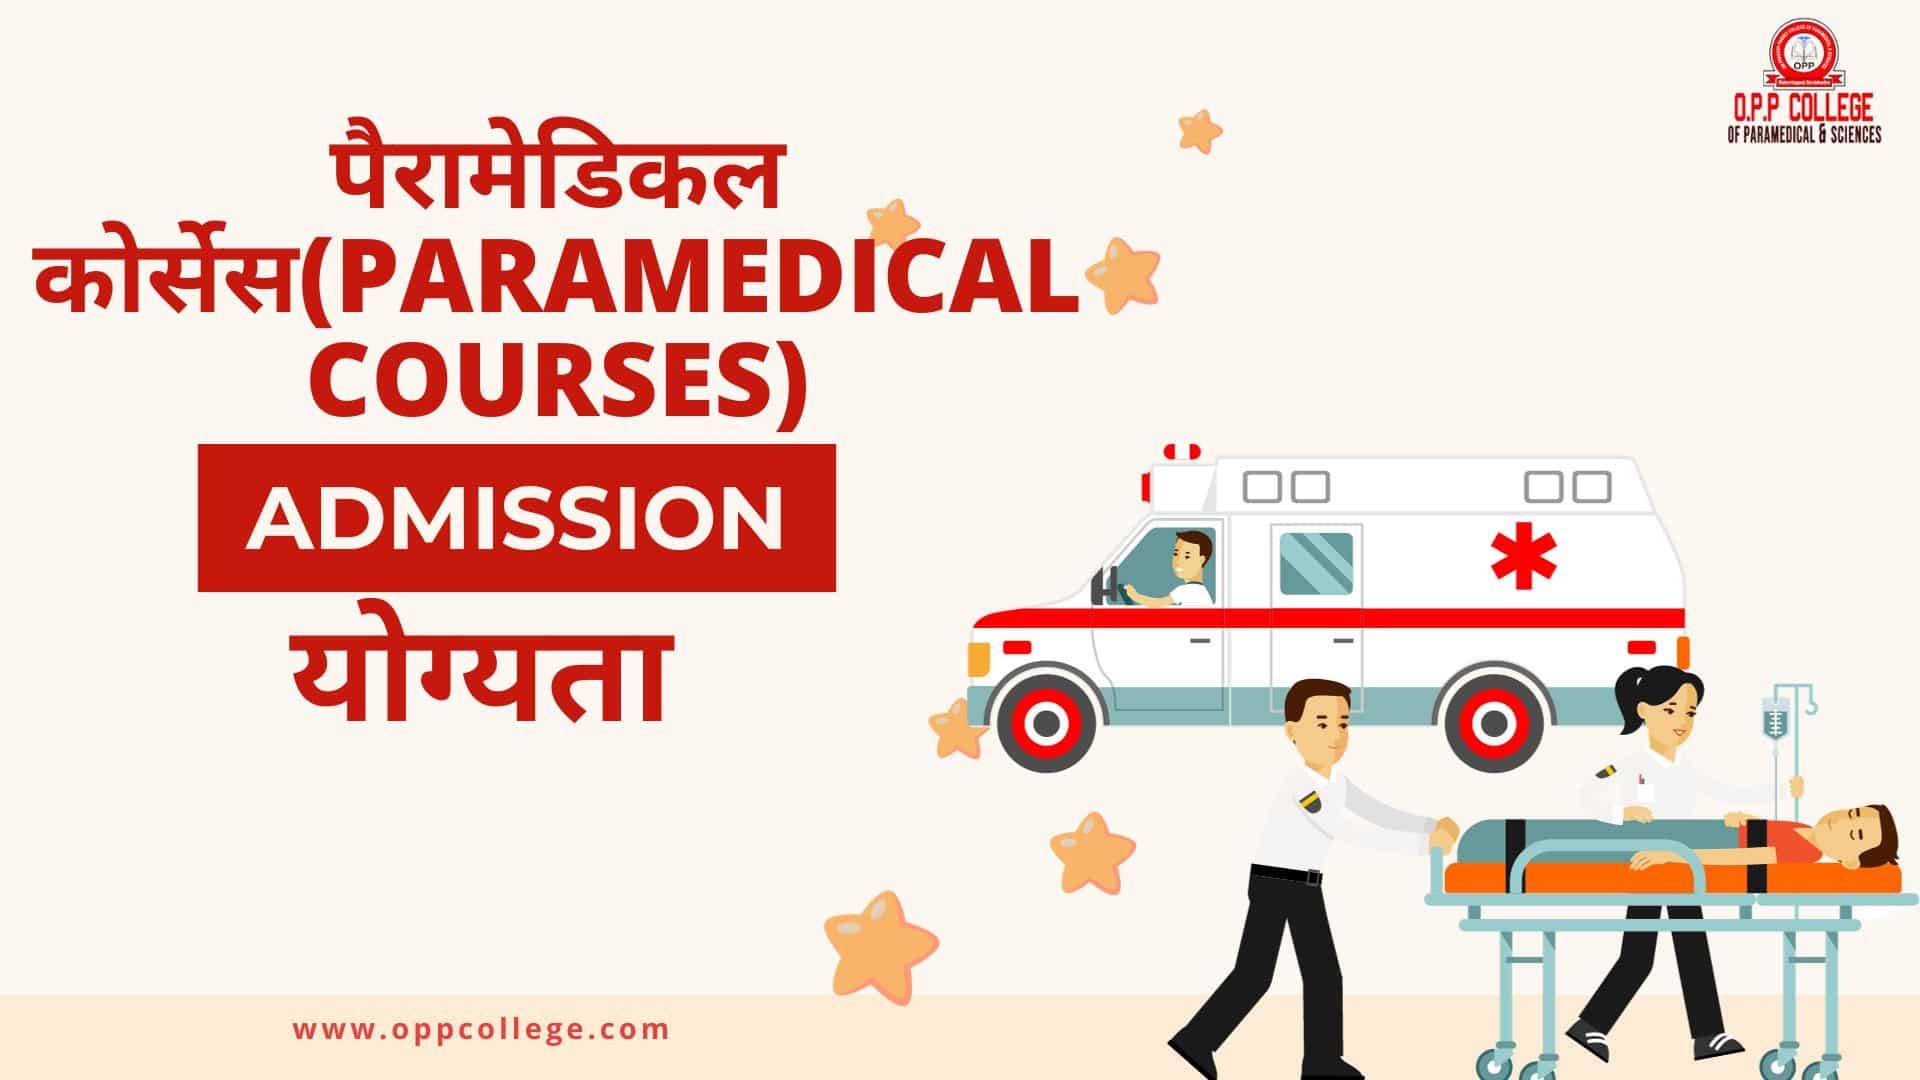 पैरामेडिकल कोर्सेस(Paramedical Courses)